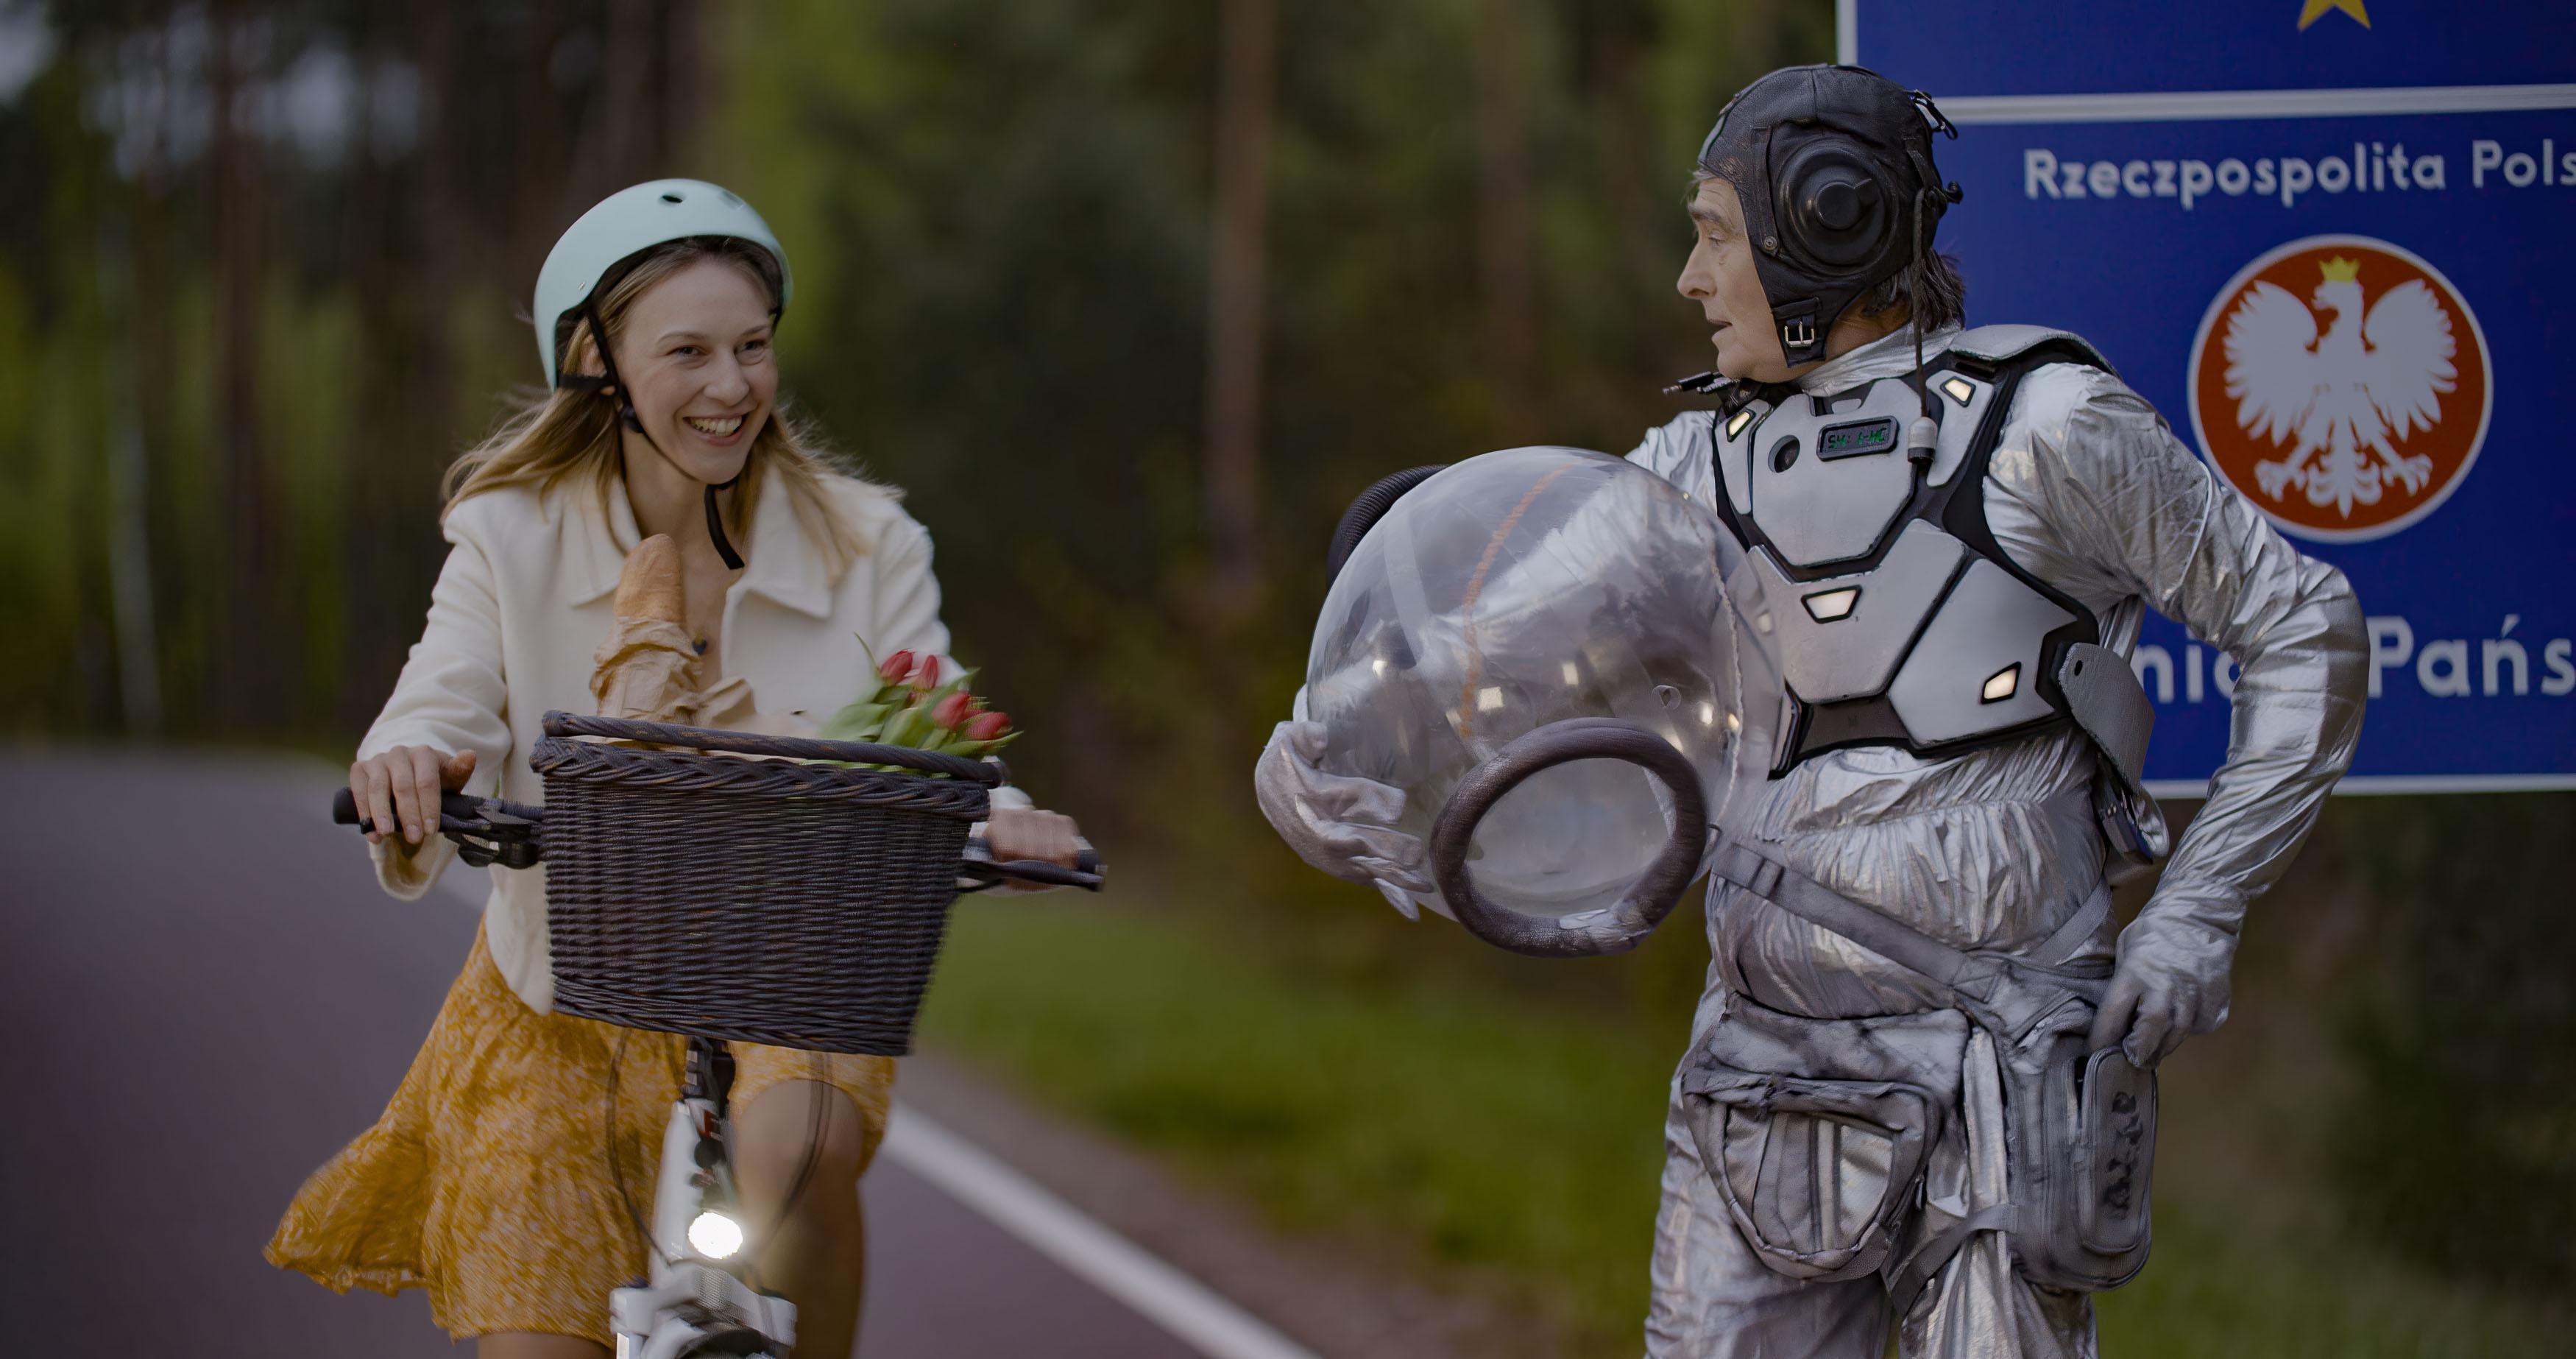 Mężczyzna w stroju astronauty stoi na tle znaku granicy Polski, obok przejeżdża uśmiechnięta młoda kobieta na rowerze